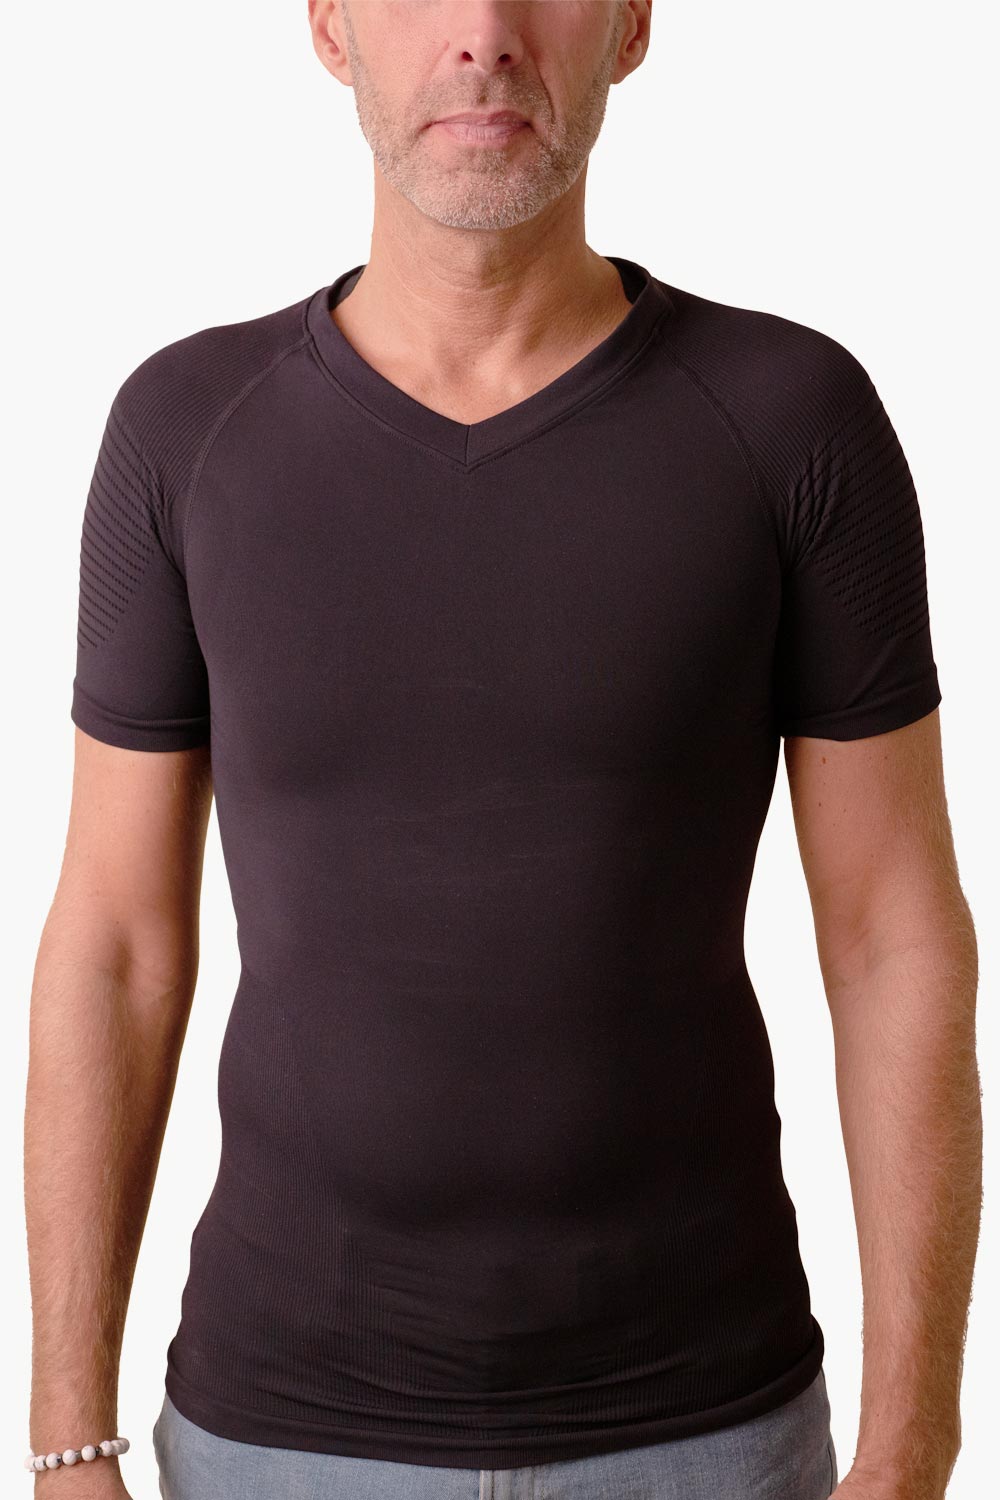 Anodyne® Körperhaltung Shirt - Männer